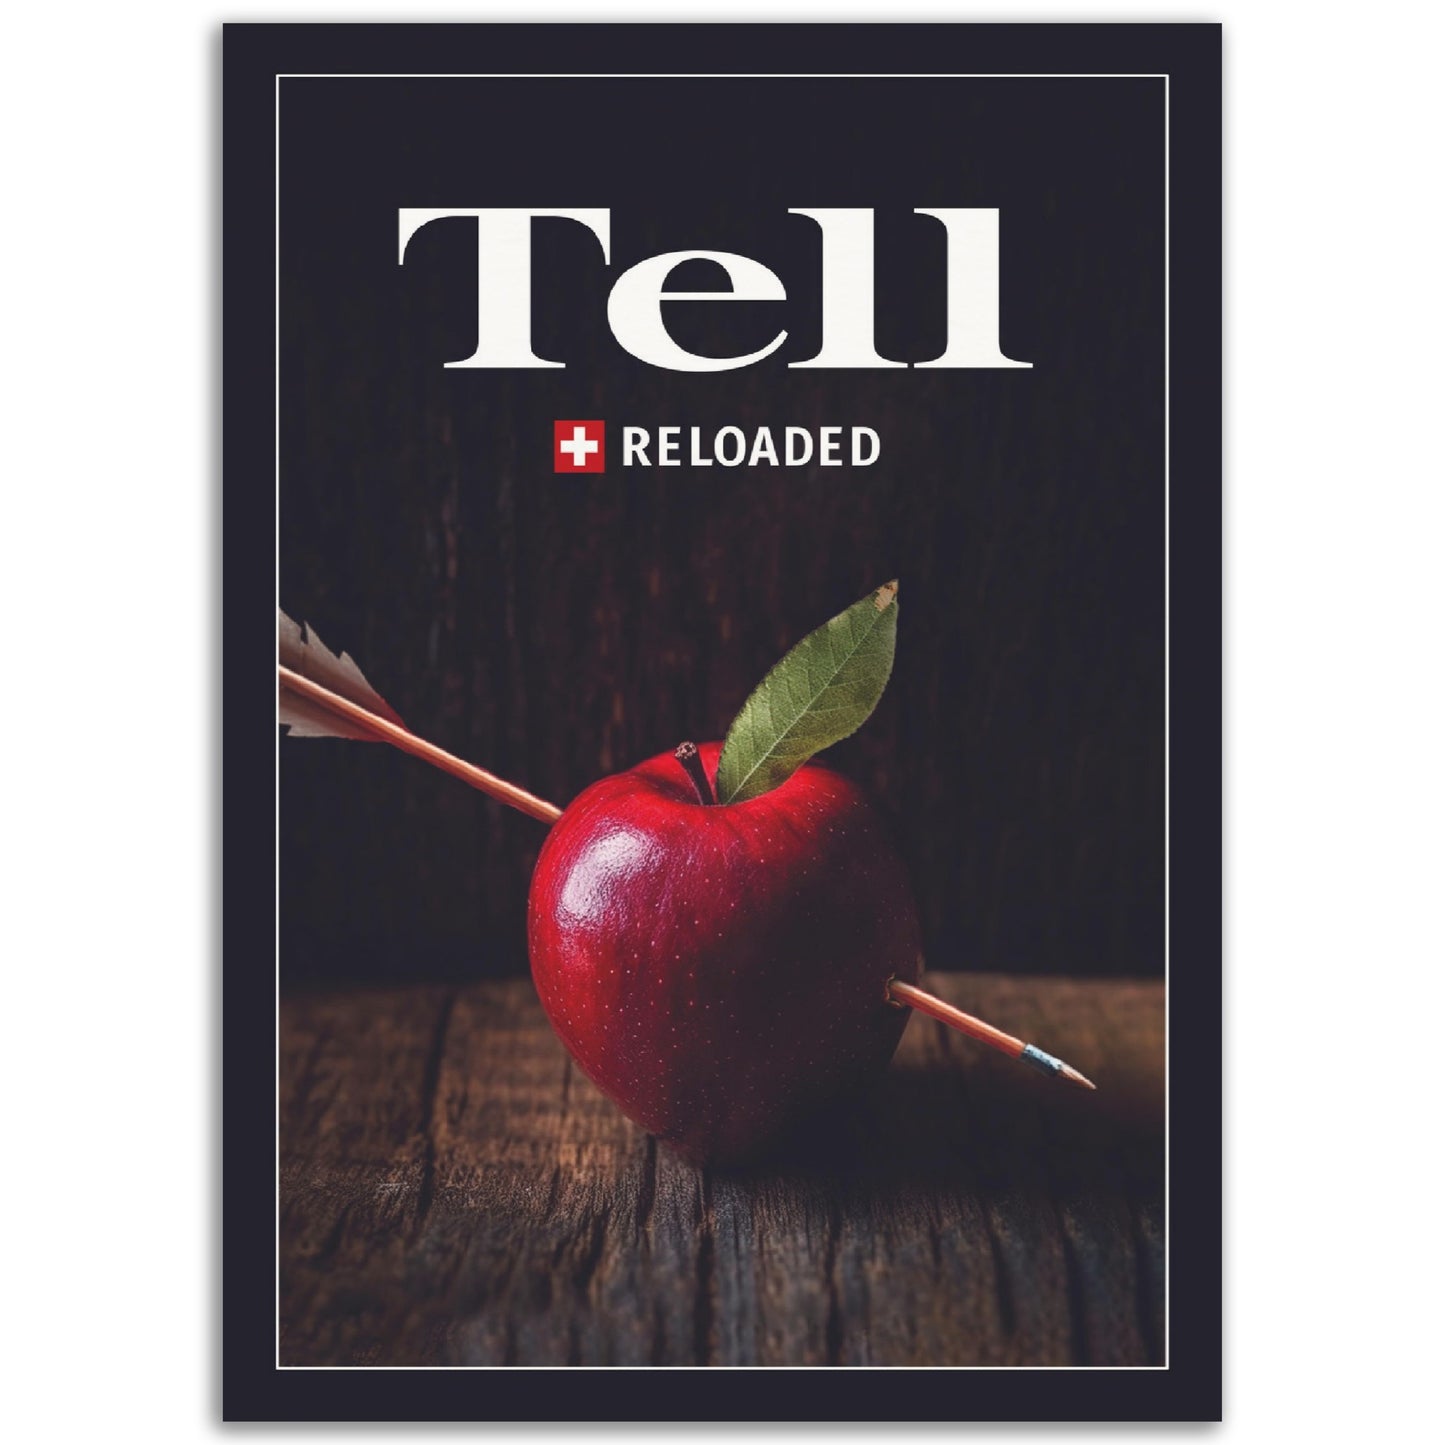 Tell reloaded - Poster